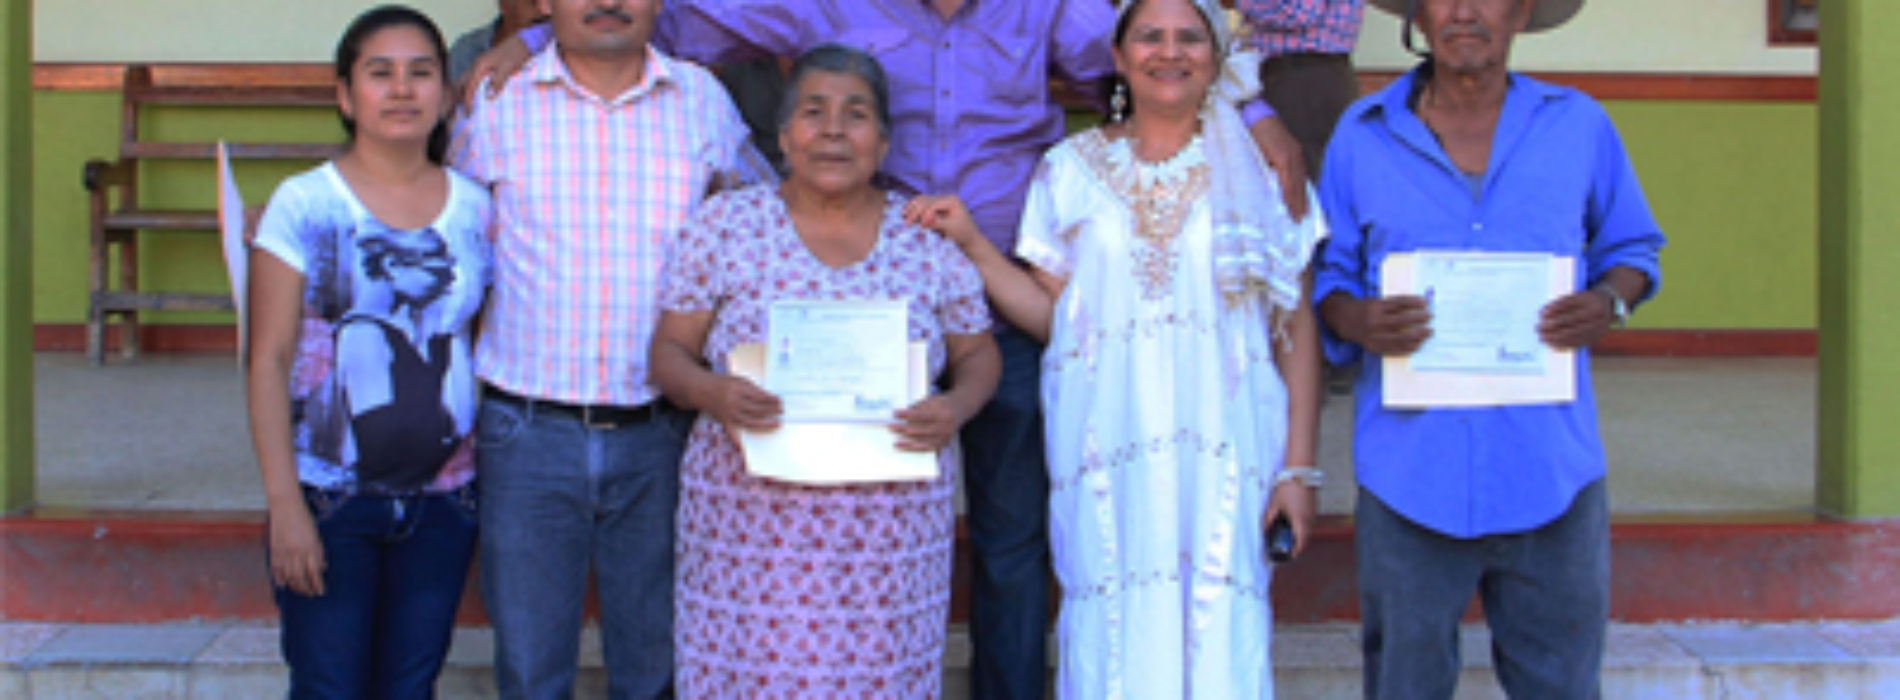 Crece Santa María Zoquitlán en educación, cultura e infraestructura